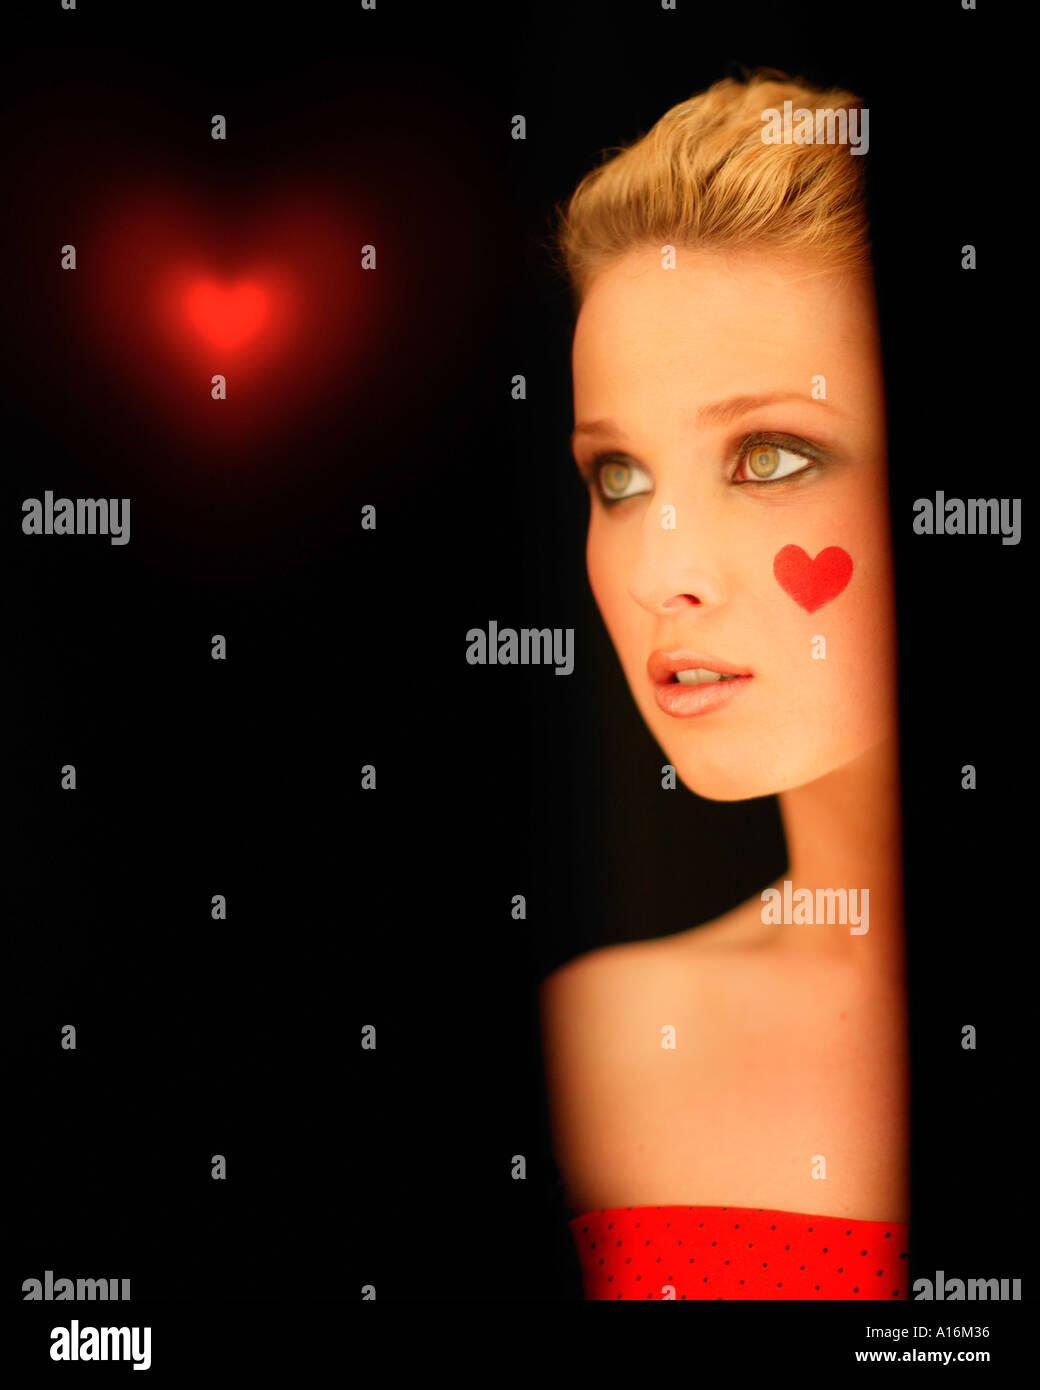 Retrato de una joven 18, 19, 20, 21, 20-24, 24-29, 30-34, de edad con corazón rojo pintado en su mejilla Foto de stock